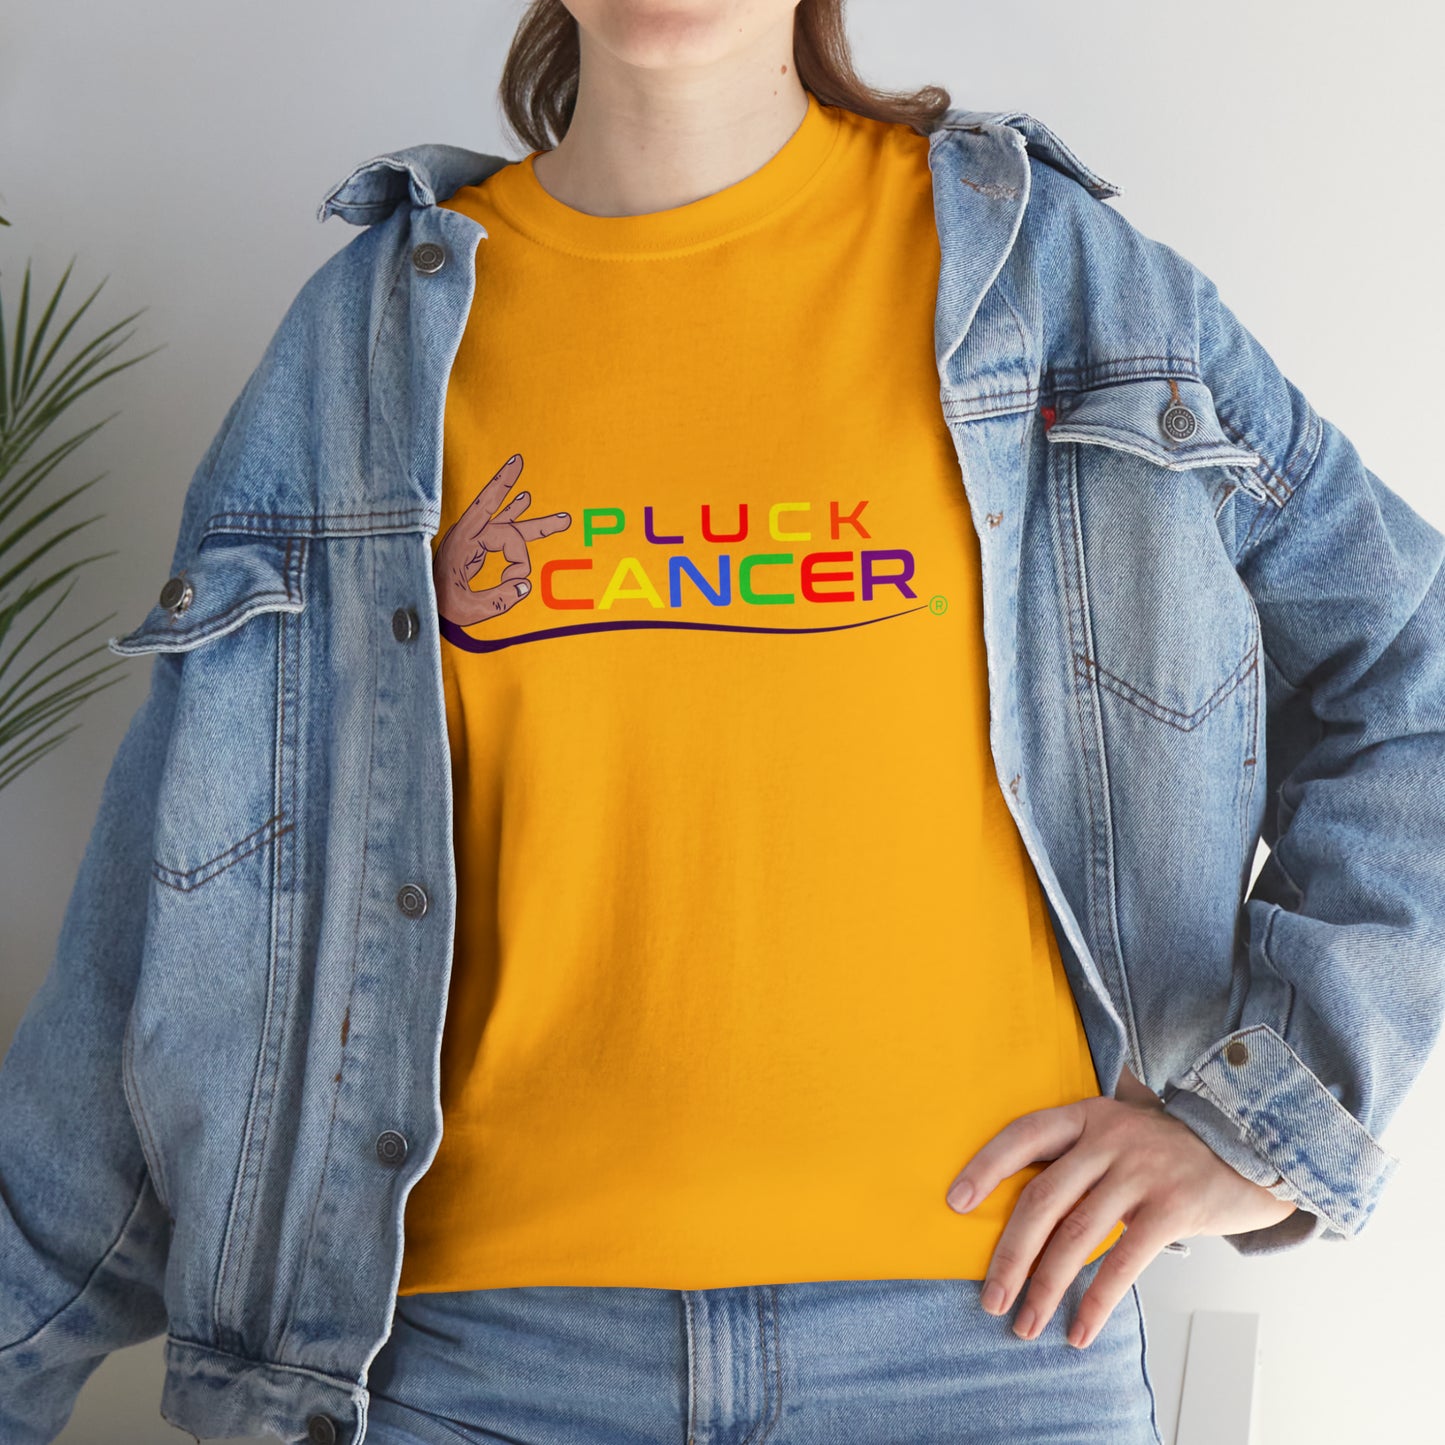 Pluck Cancer Women's Cotton T-Shirt - Gold